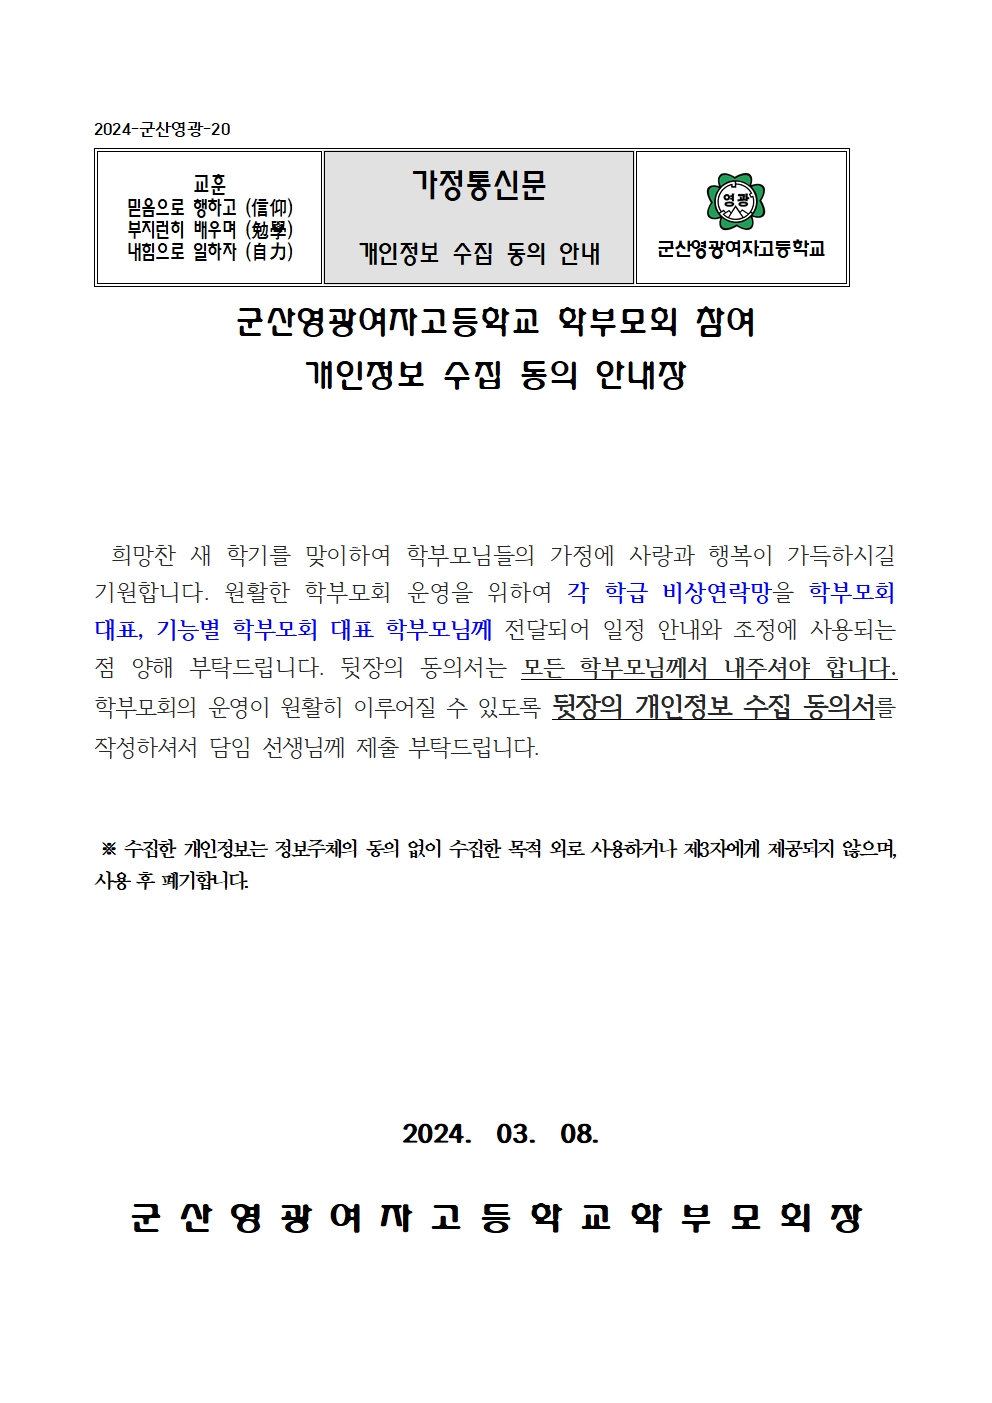 2024. 학부모회 운영을 위한 개인정보 수집 동의 안내장(군산영광여고)001